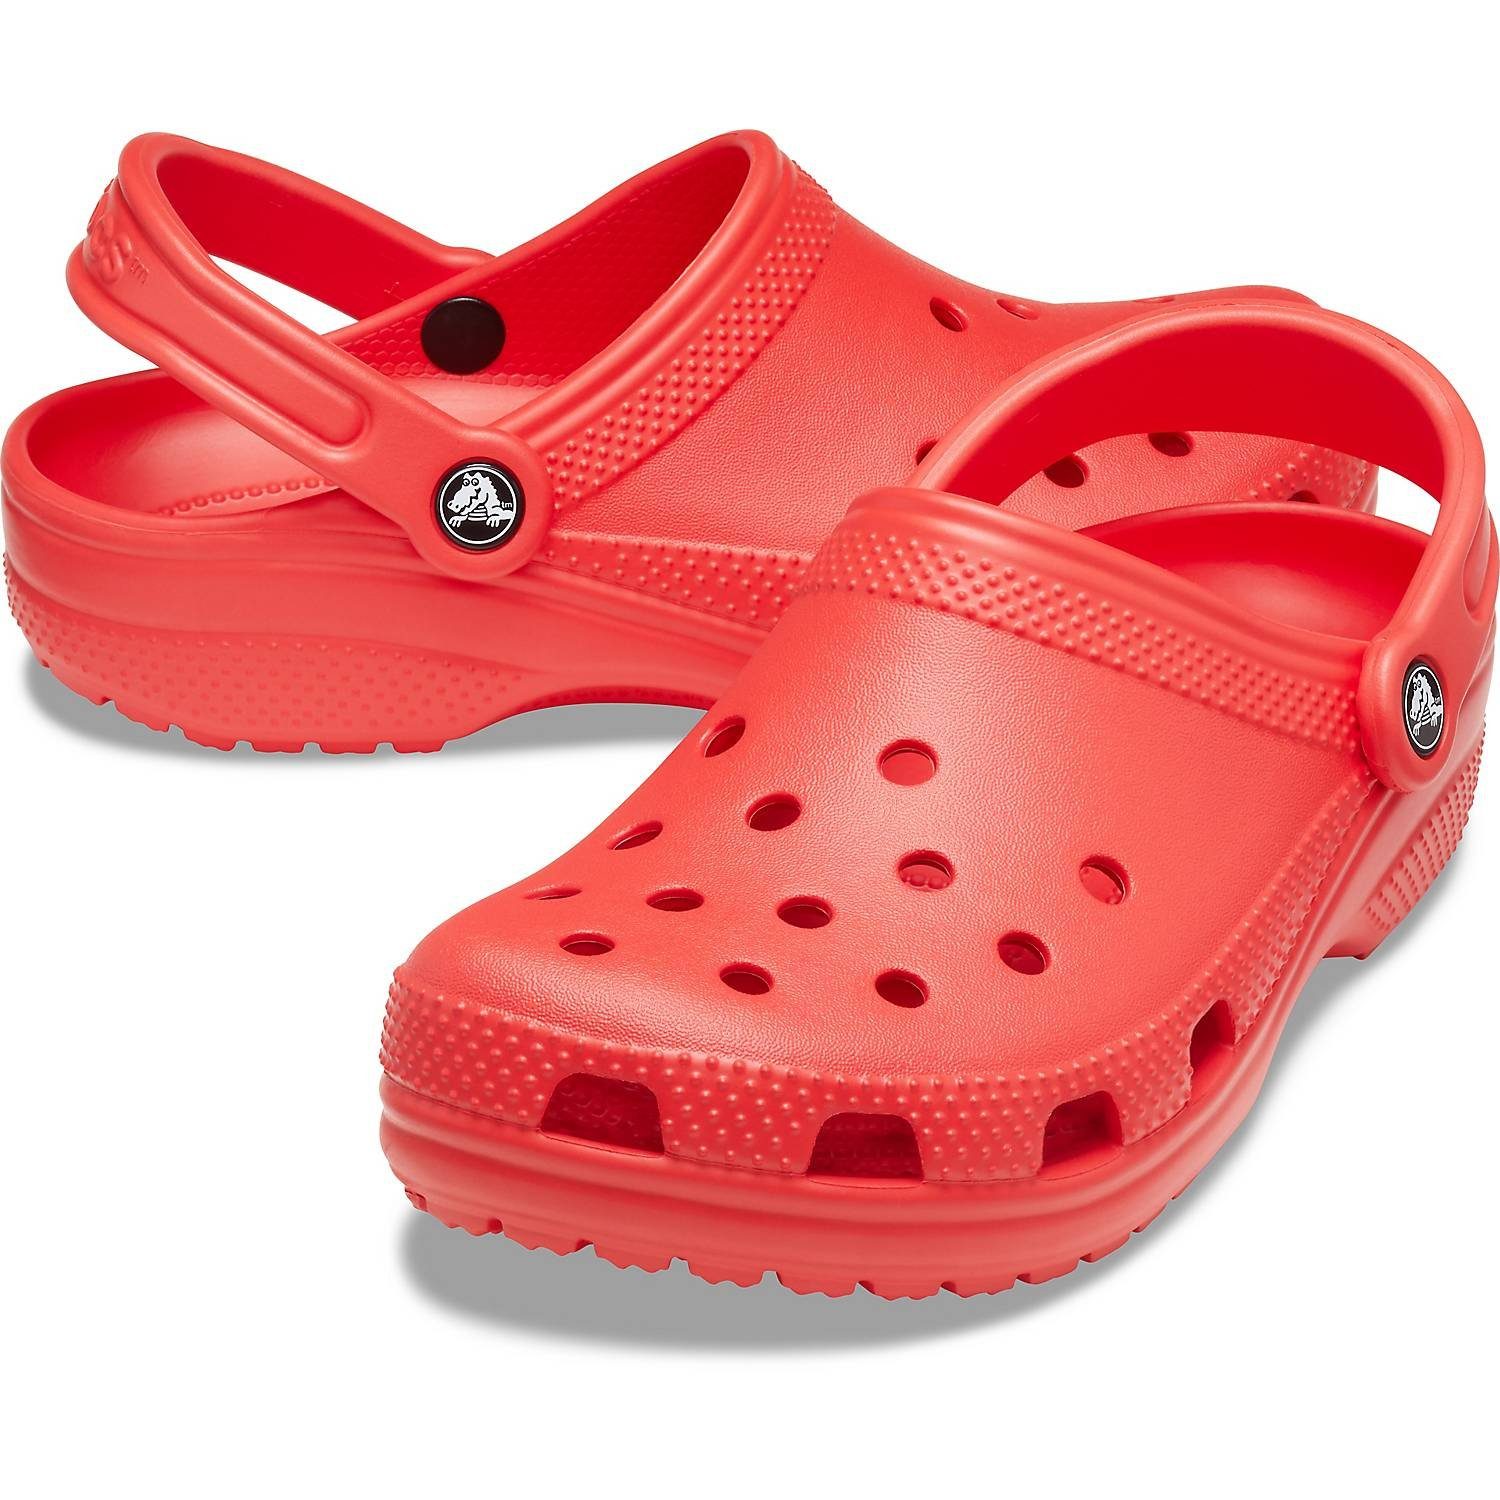 Crocs »Crocs Classic« Clog online kaufen | OTTO